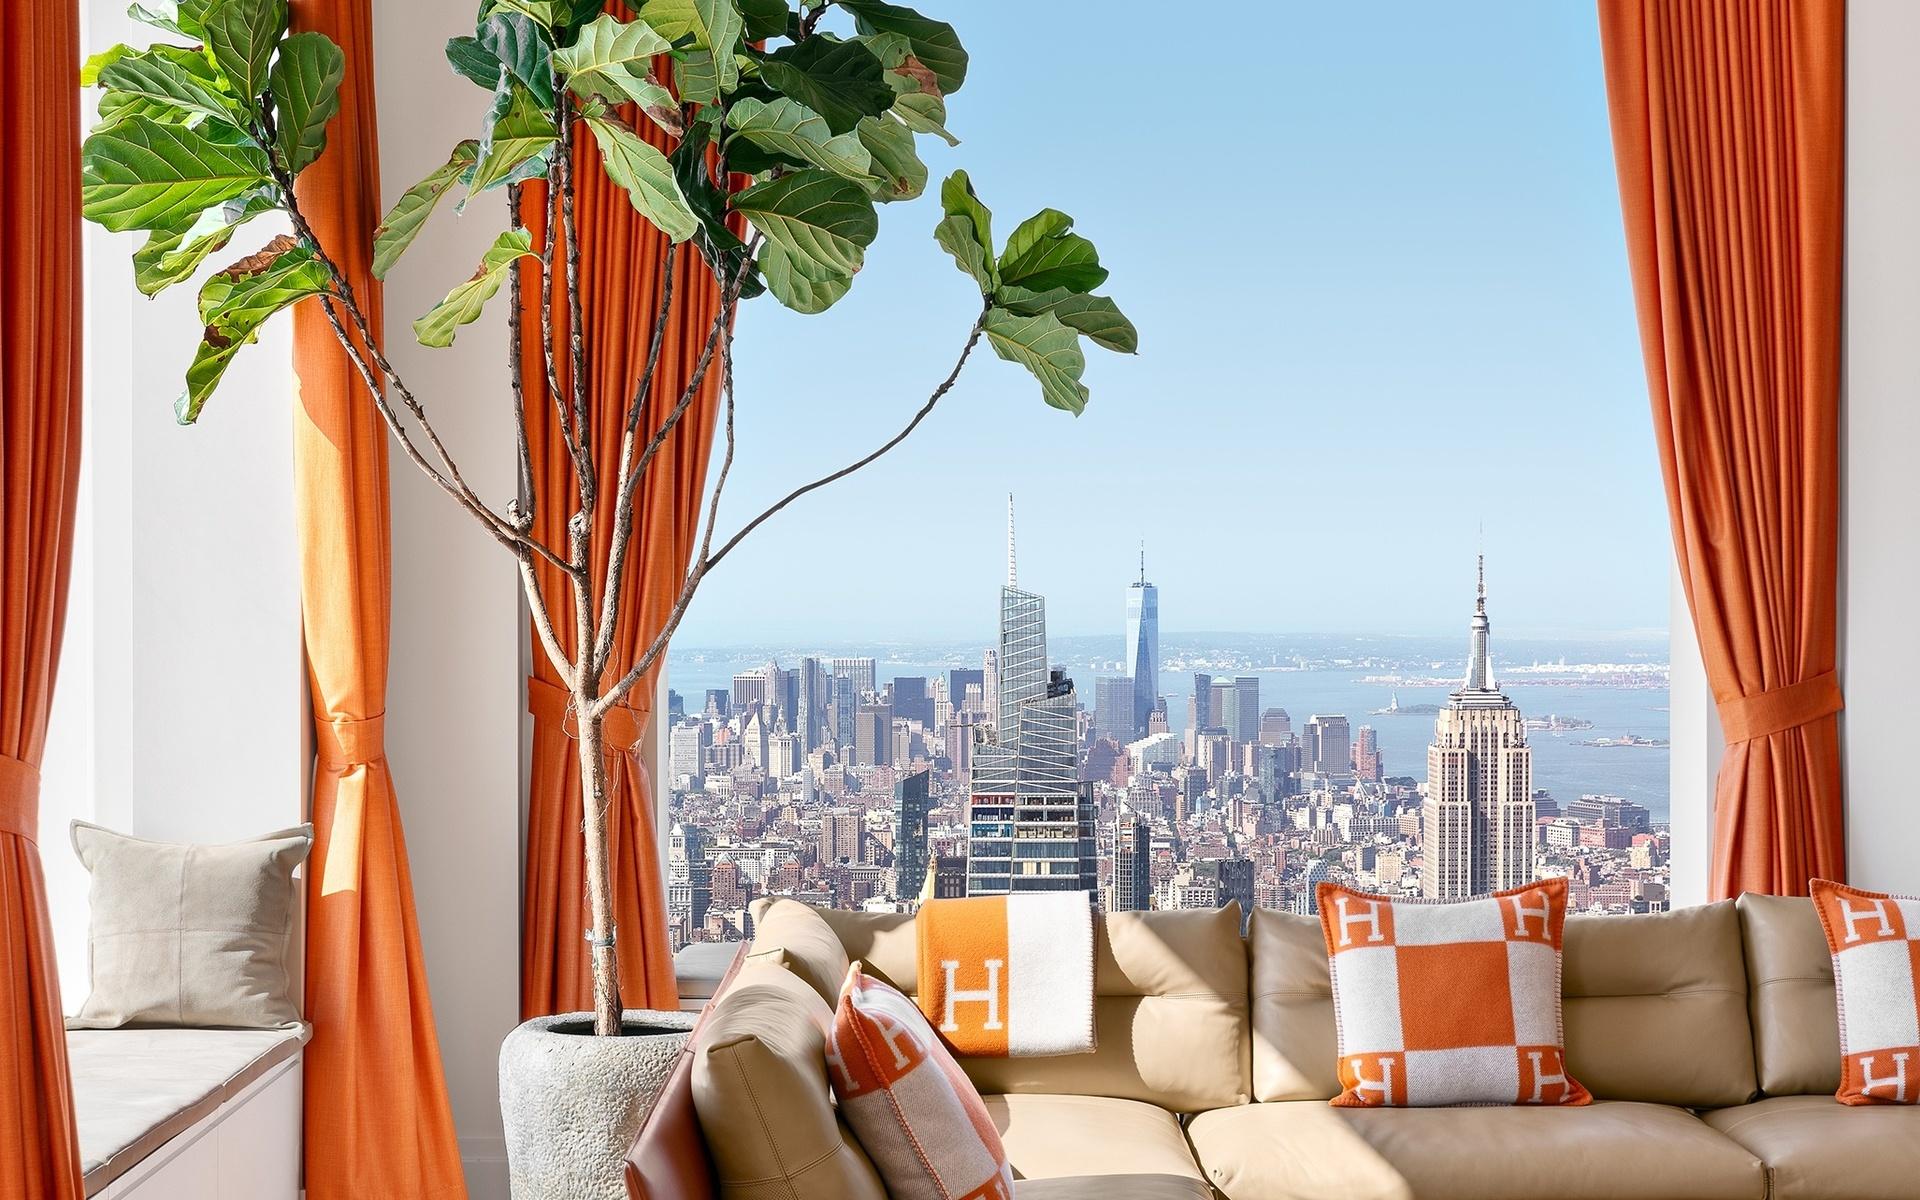 Flera ikoniska byggnader kan man se från takvåningen, som till exempel Empire State Building som är på 102 våningar.